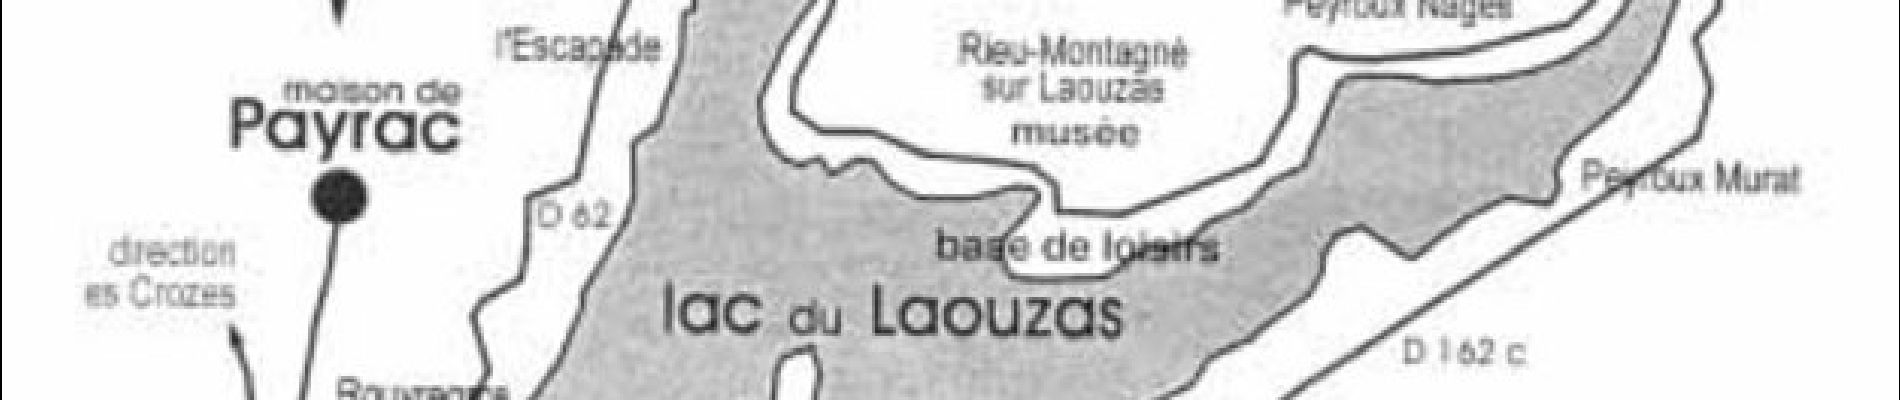 Tocht Stappen Nages - Tour du lac de Louazas - Rieu Montagné - Photo